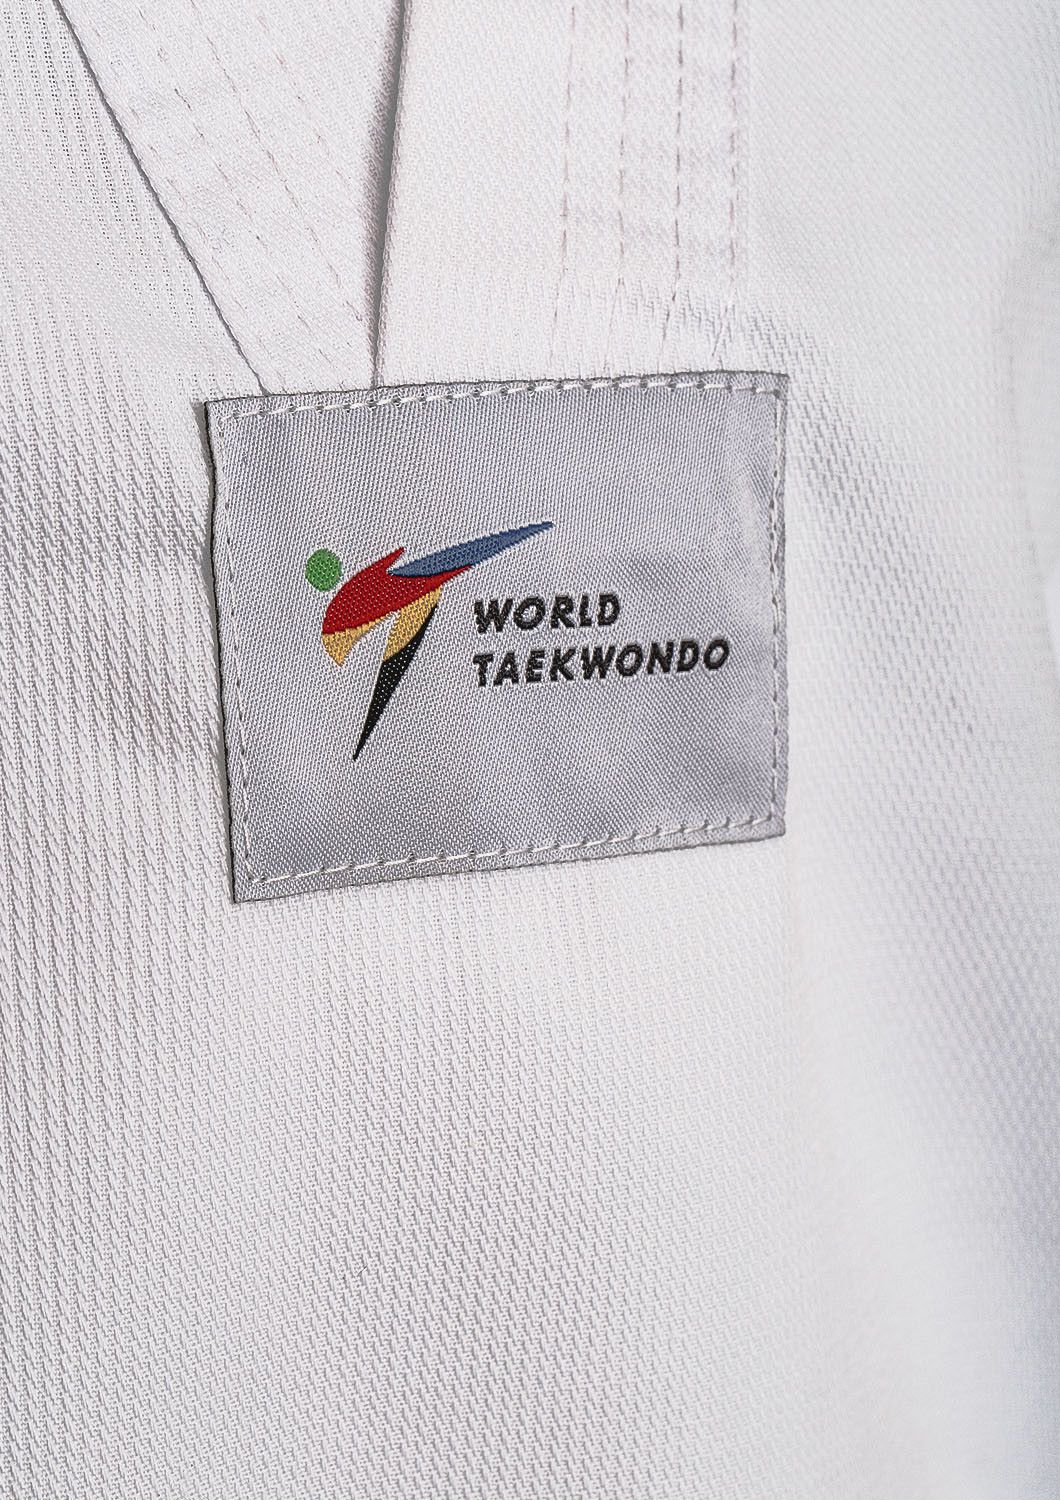 Dobok per Taekwondo Tusah Basic Uniform Omologato WT WTF bambino e adulto per competizioni ed allenamenti